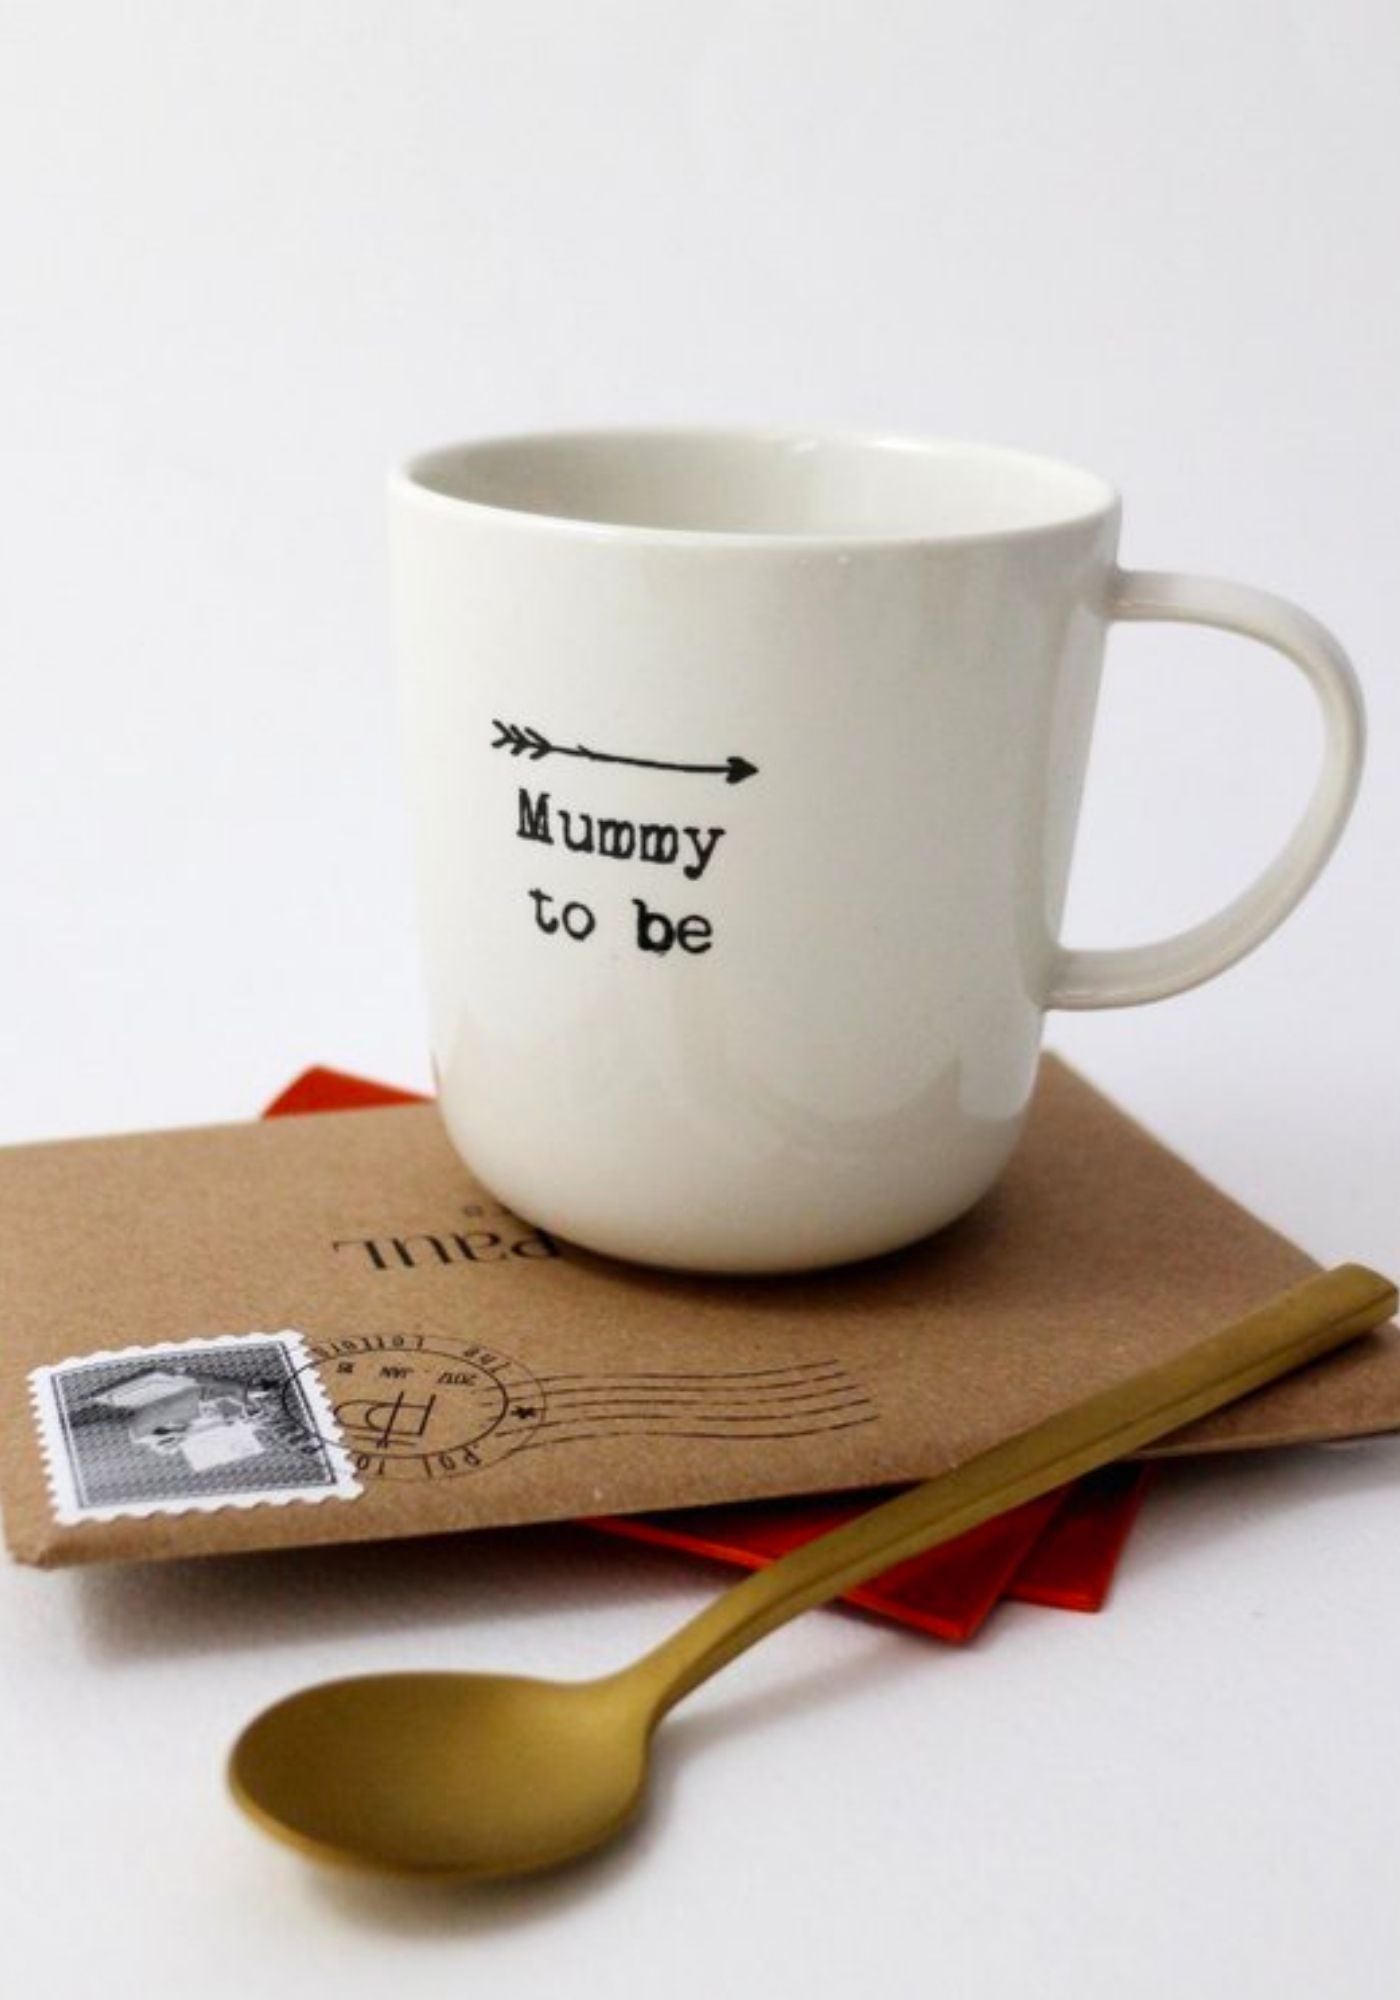 Le mug à message en faïence "Mummy to be" de chez Sophie Masson est posé sur une enveloppe